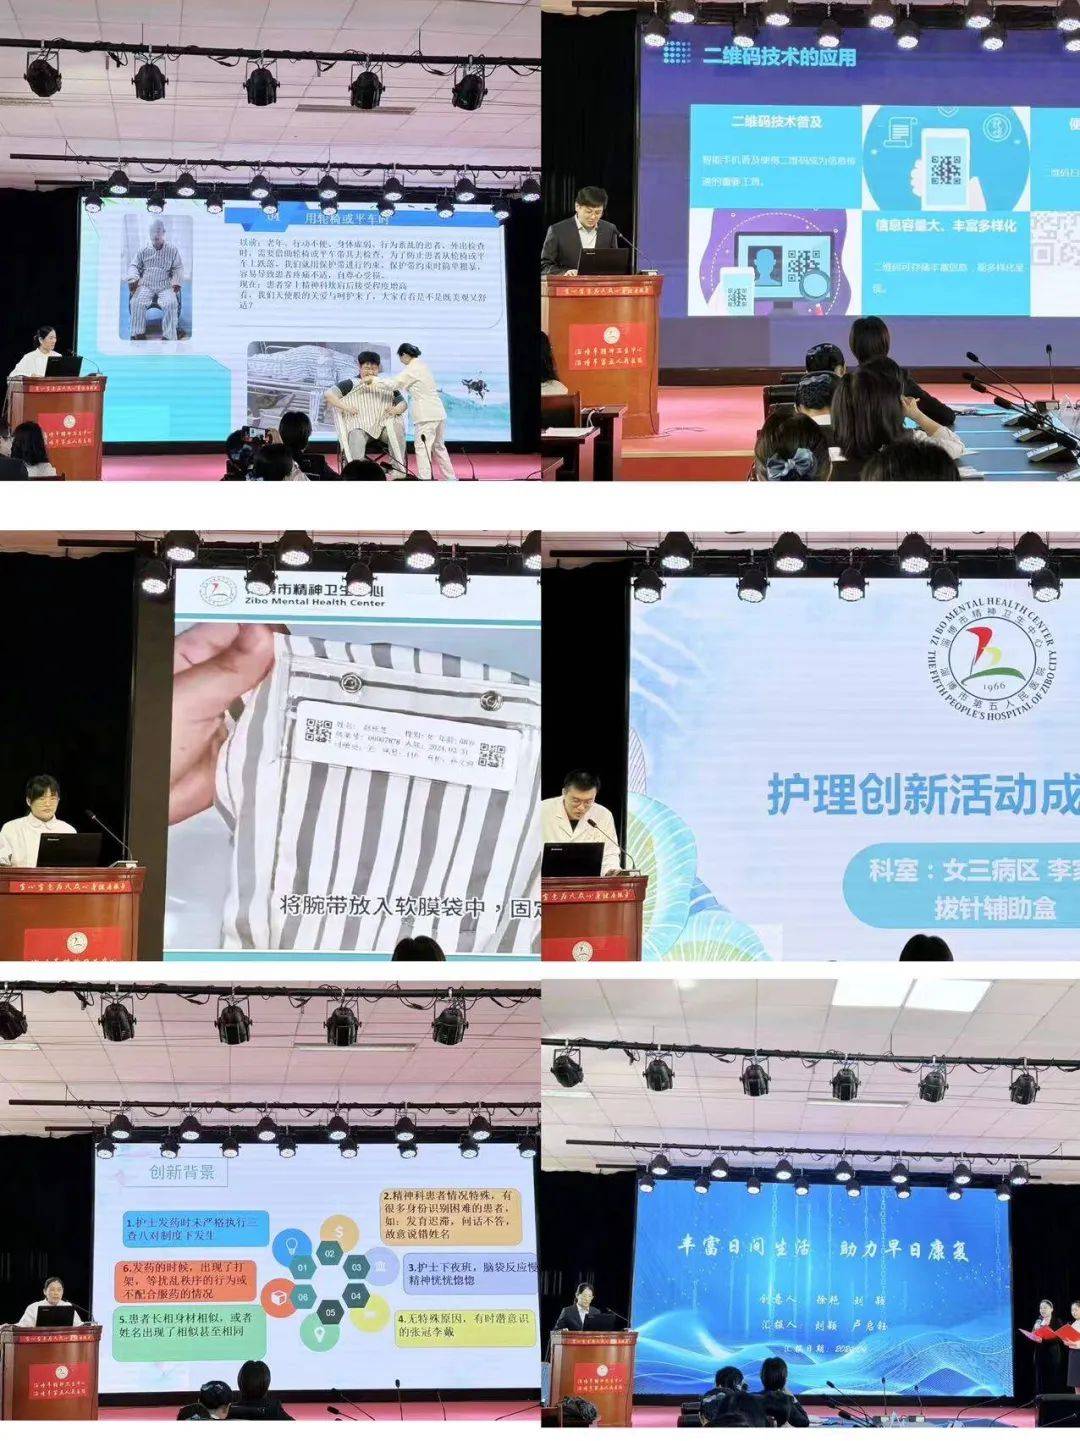 【三提三争 健康为民】淄博市精神卫生中心组织举办第一届护理创新